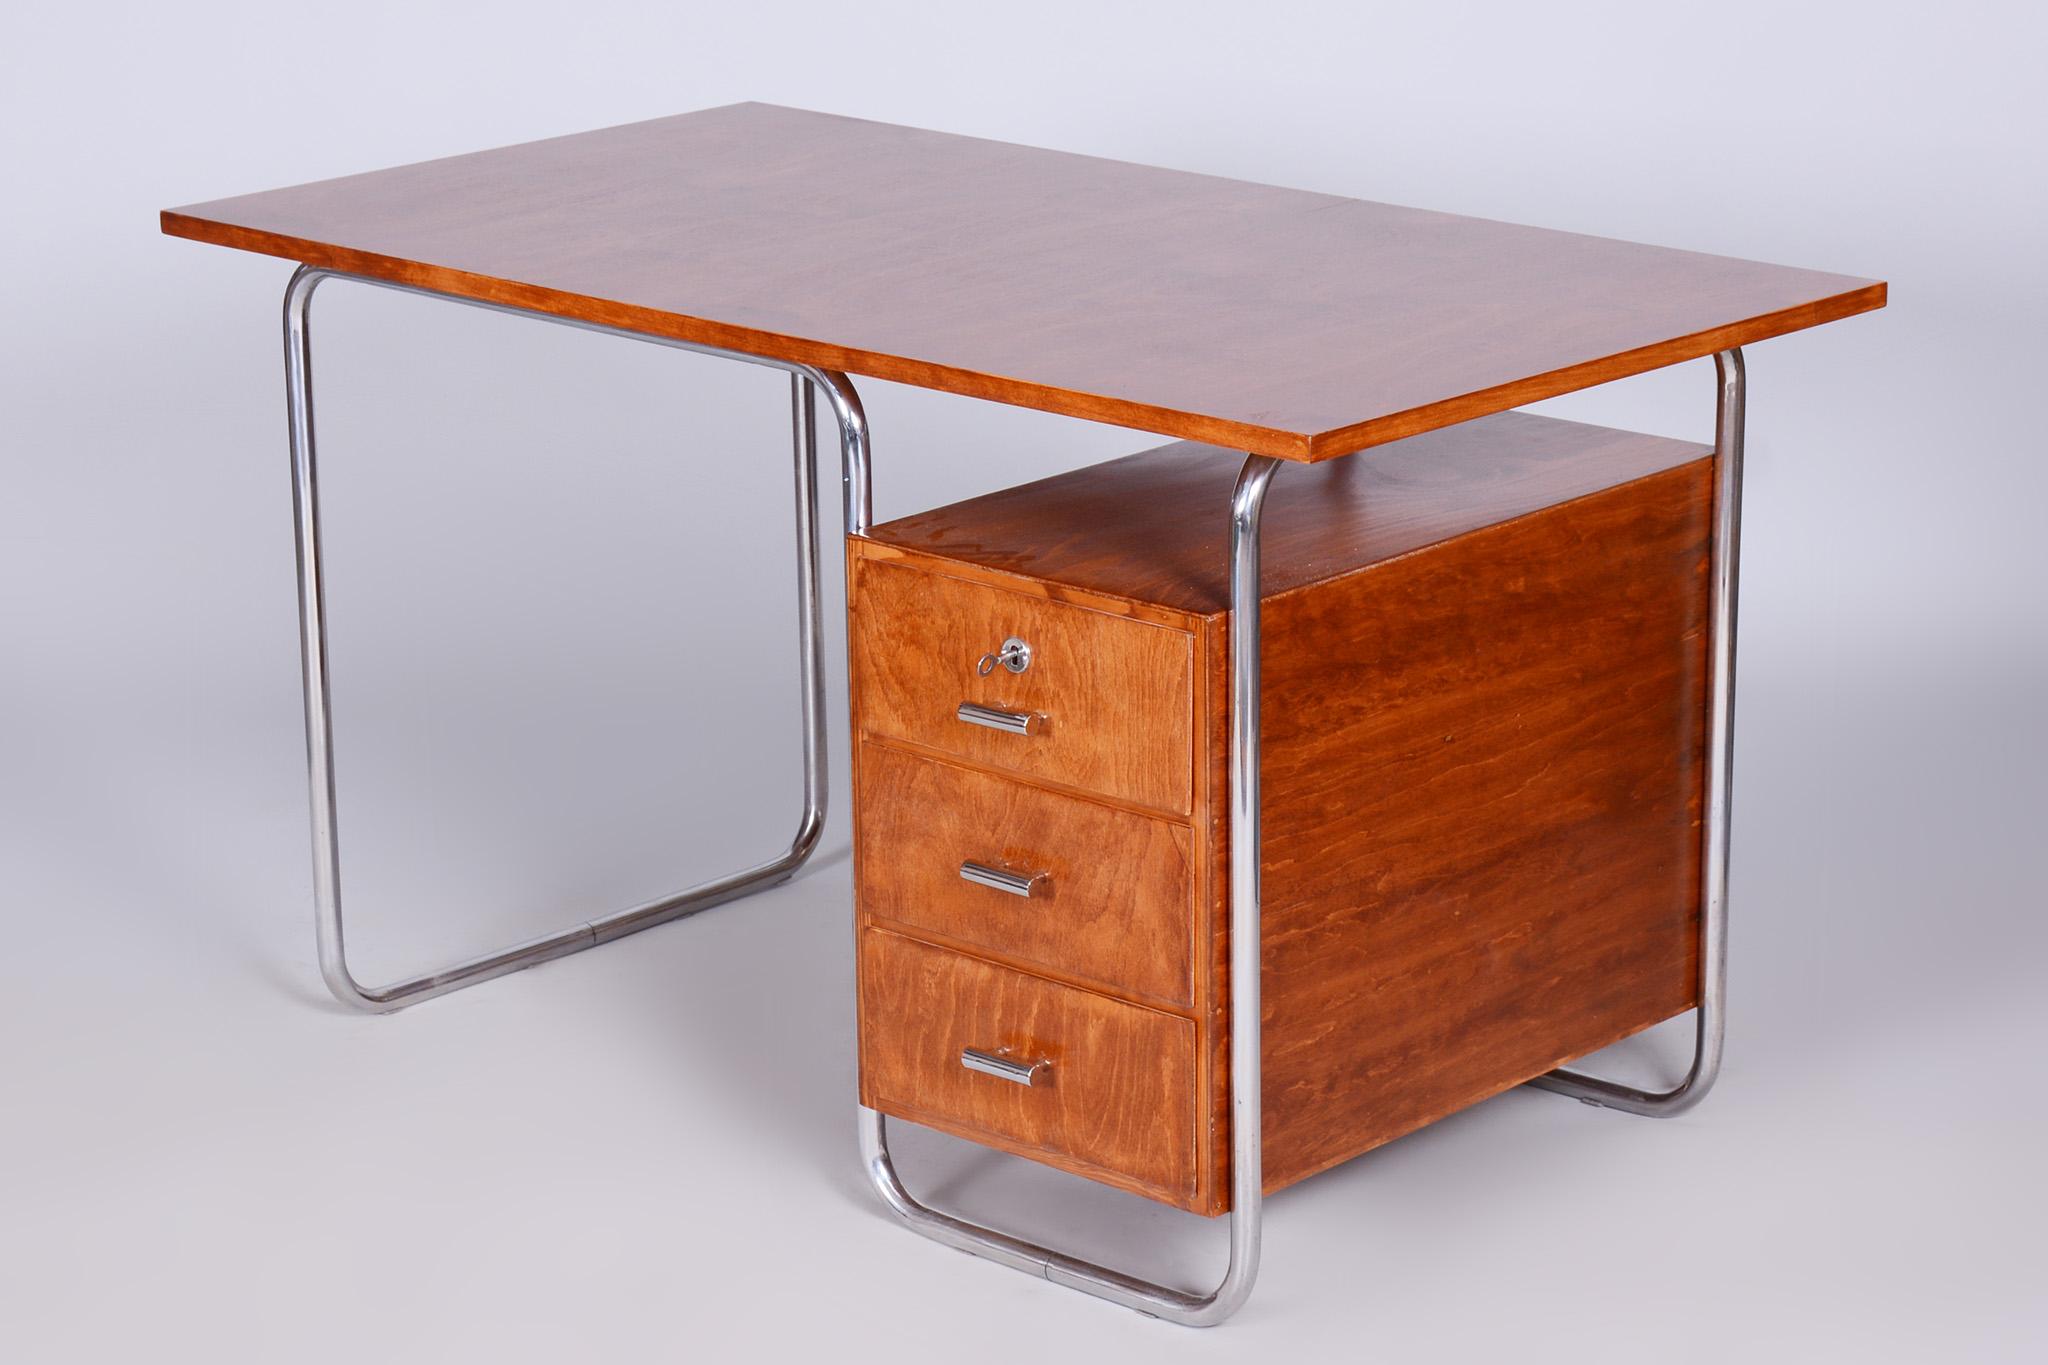 Bauhaus Beech Writing Desk Made in 1930s by Robert Slezak, Czechia, Restored For Sale 2